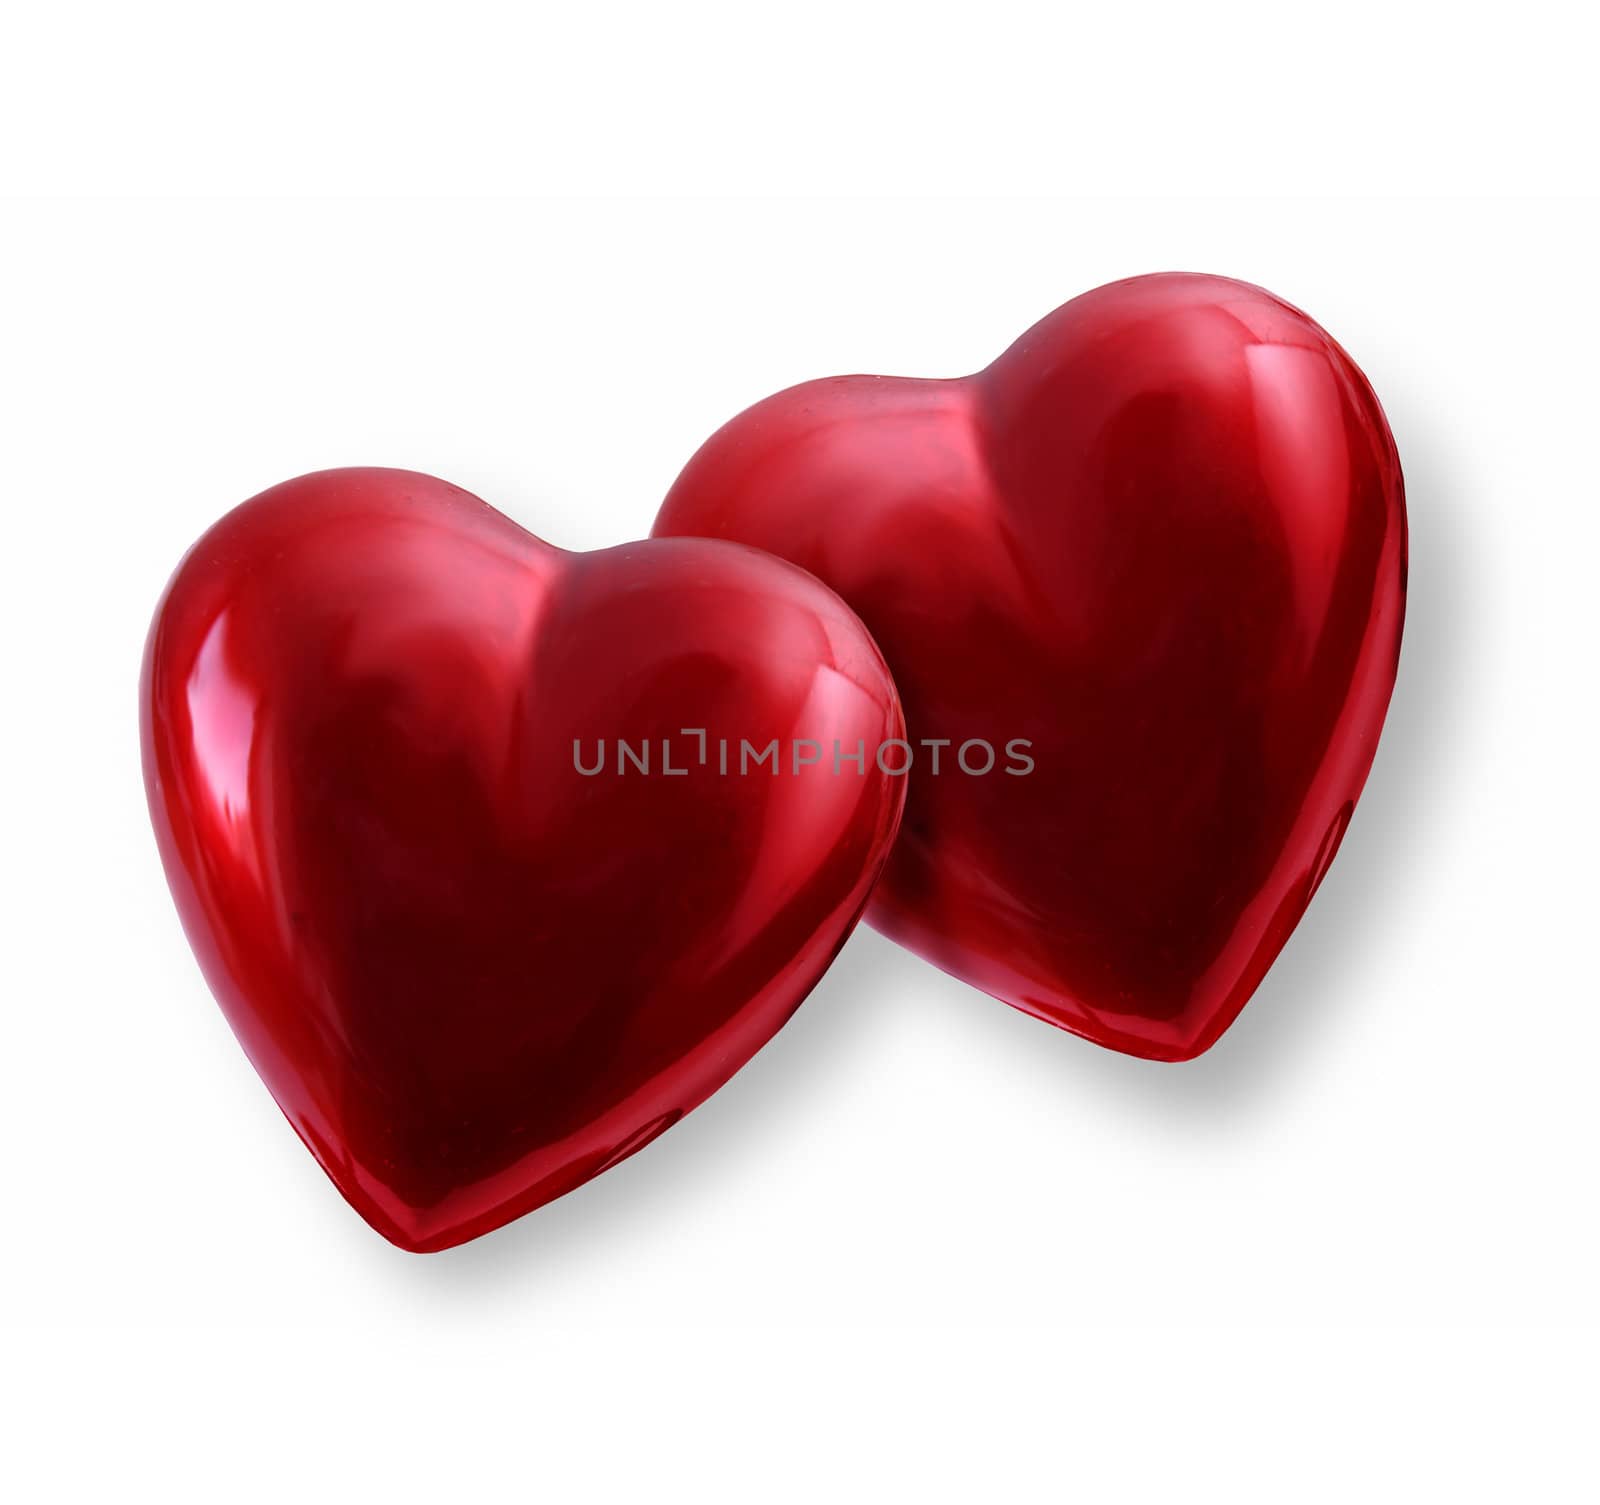 Two Valentine hearts by anterovium